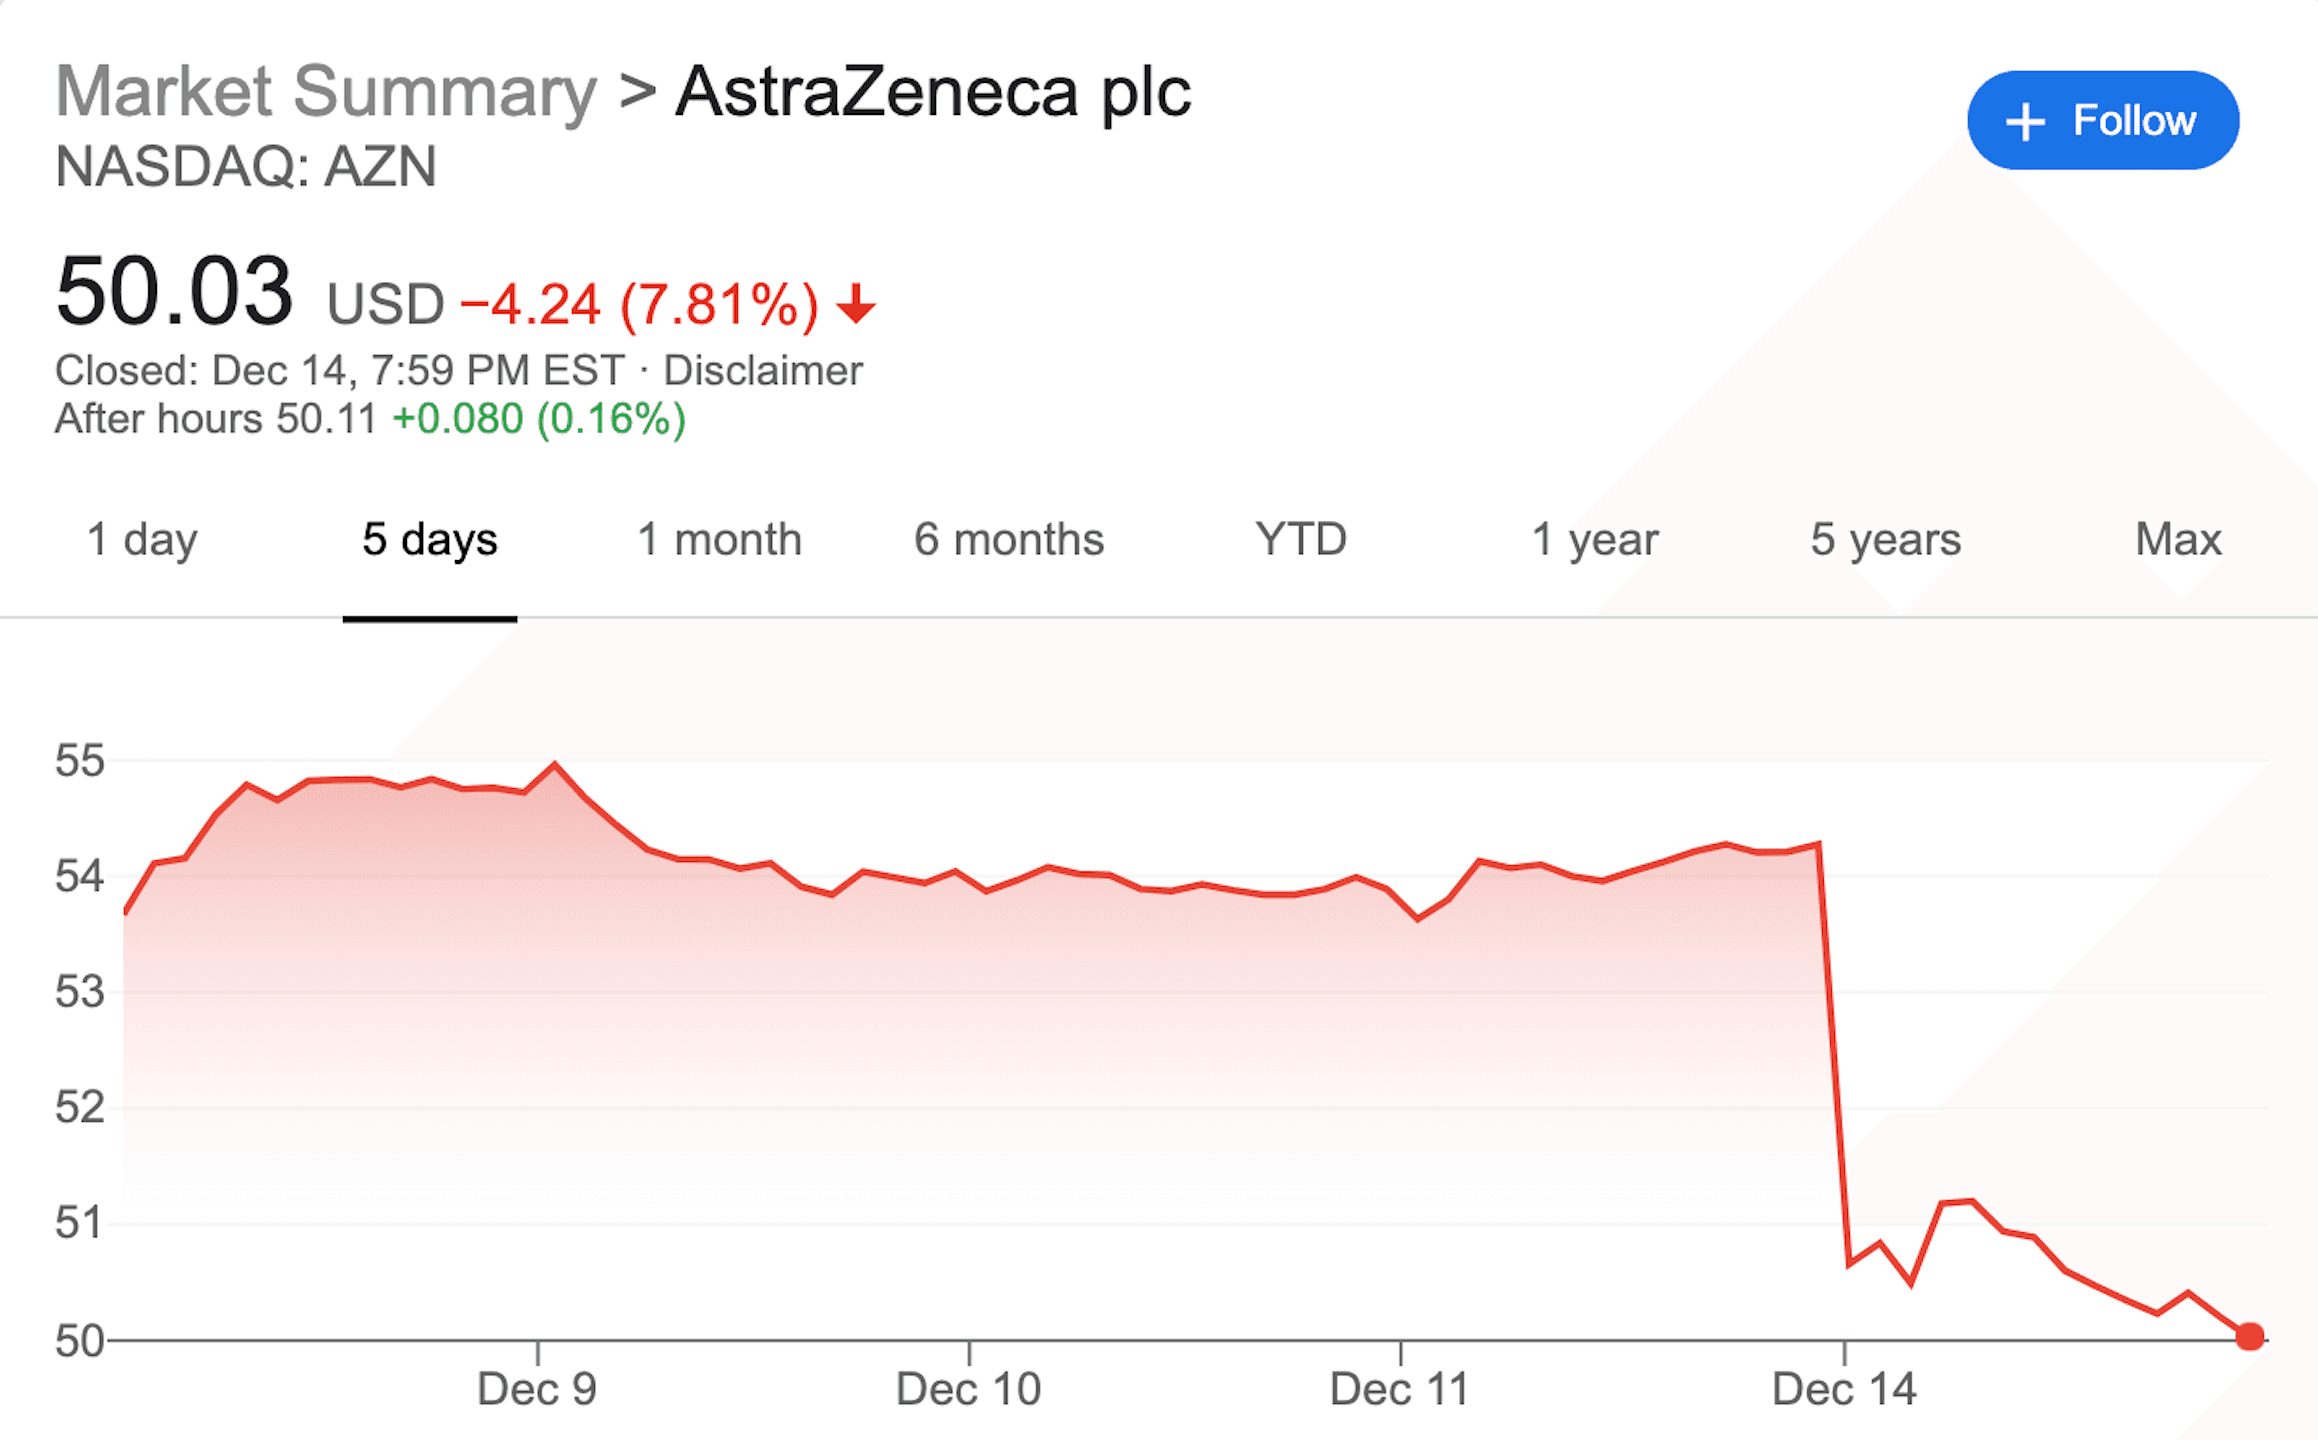 Astrazeneca stock